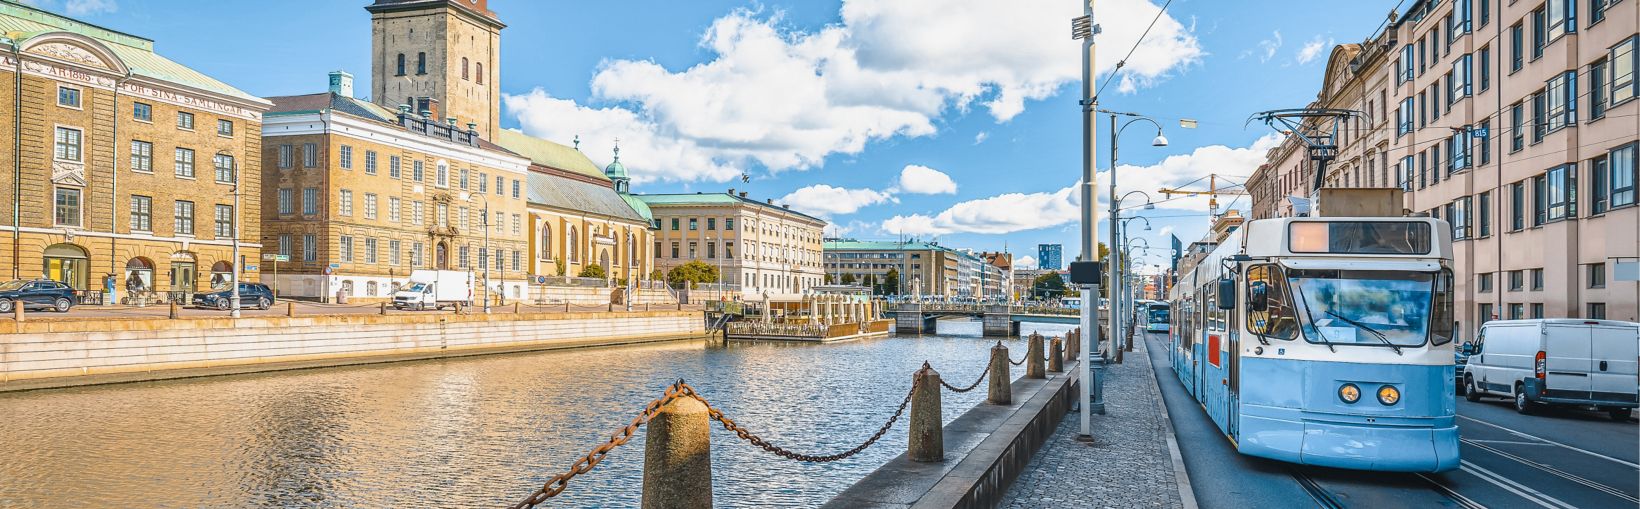 Göteborgin kaupungin katuarkkitehtuurin näkymä, läntinen Götanmaa, Ruotsi